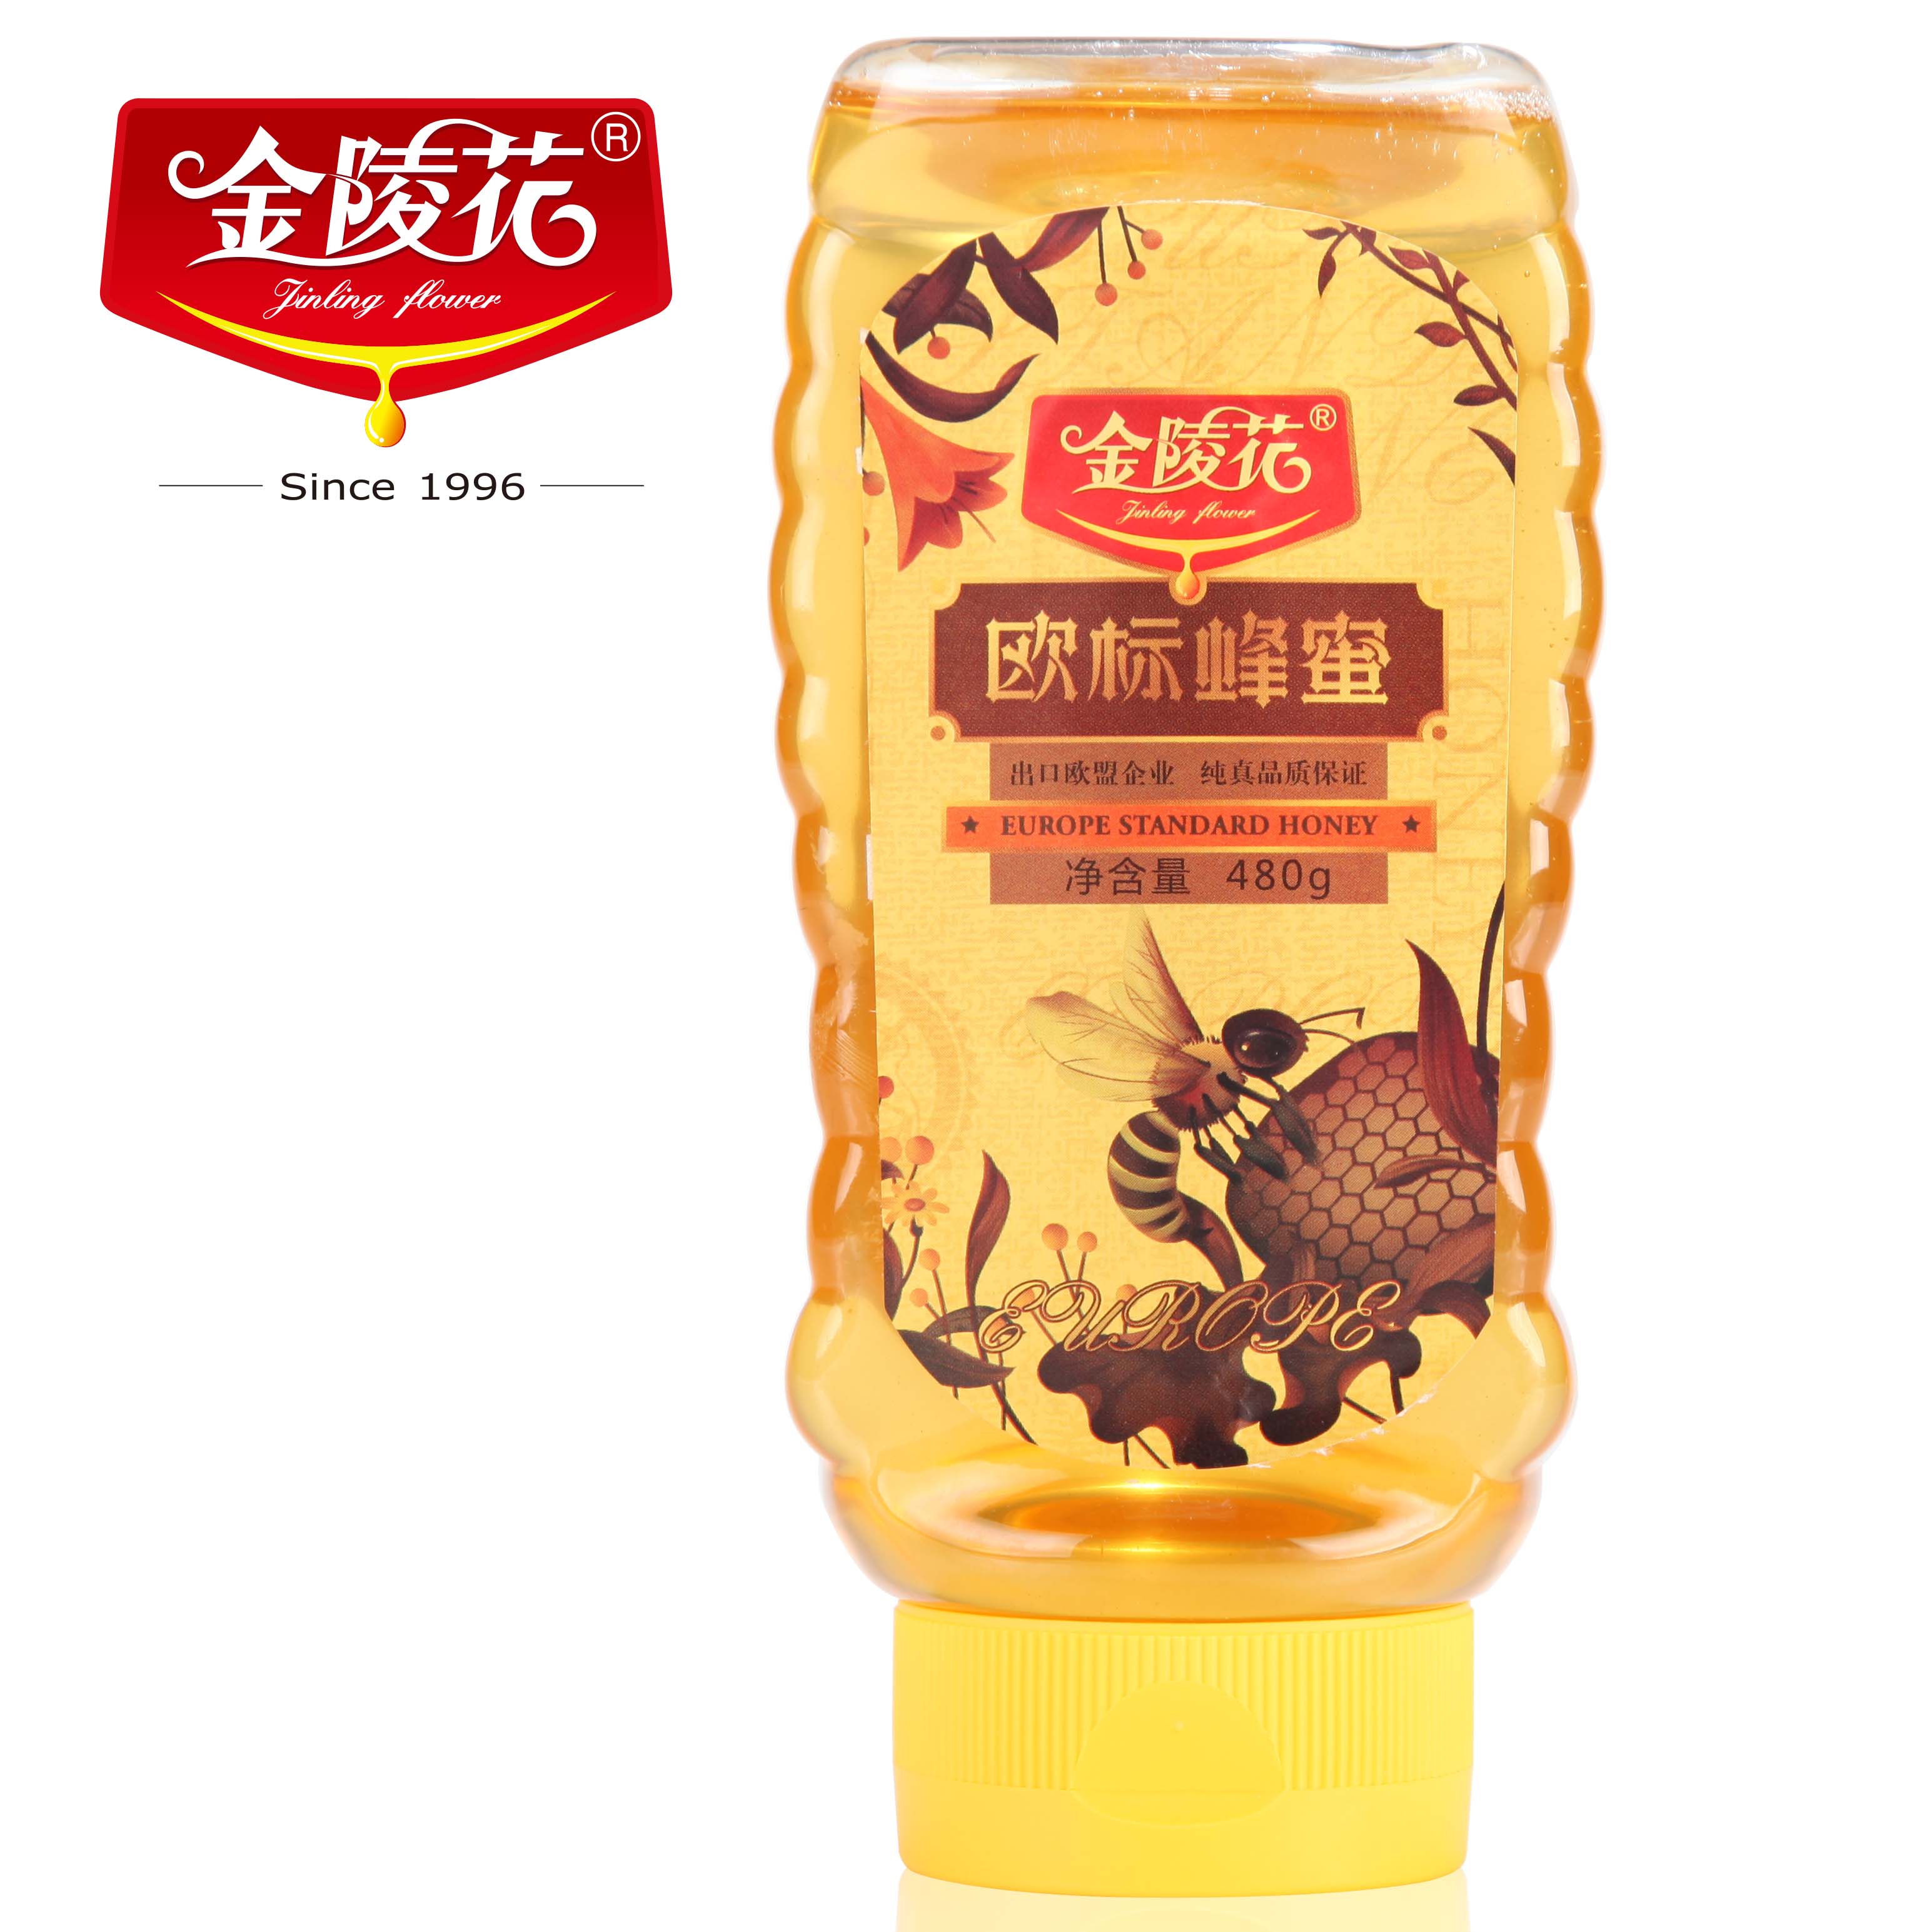 金陵花纯天然欧标蜂蜜 欧盟标准  出口 480g包邮 第二瓶半价